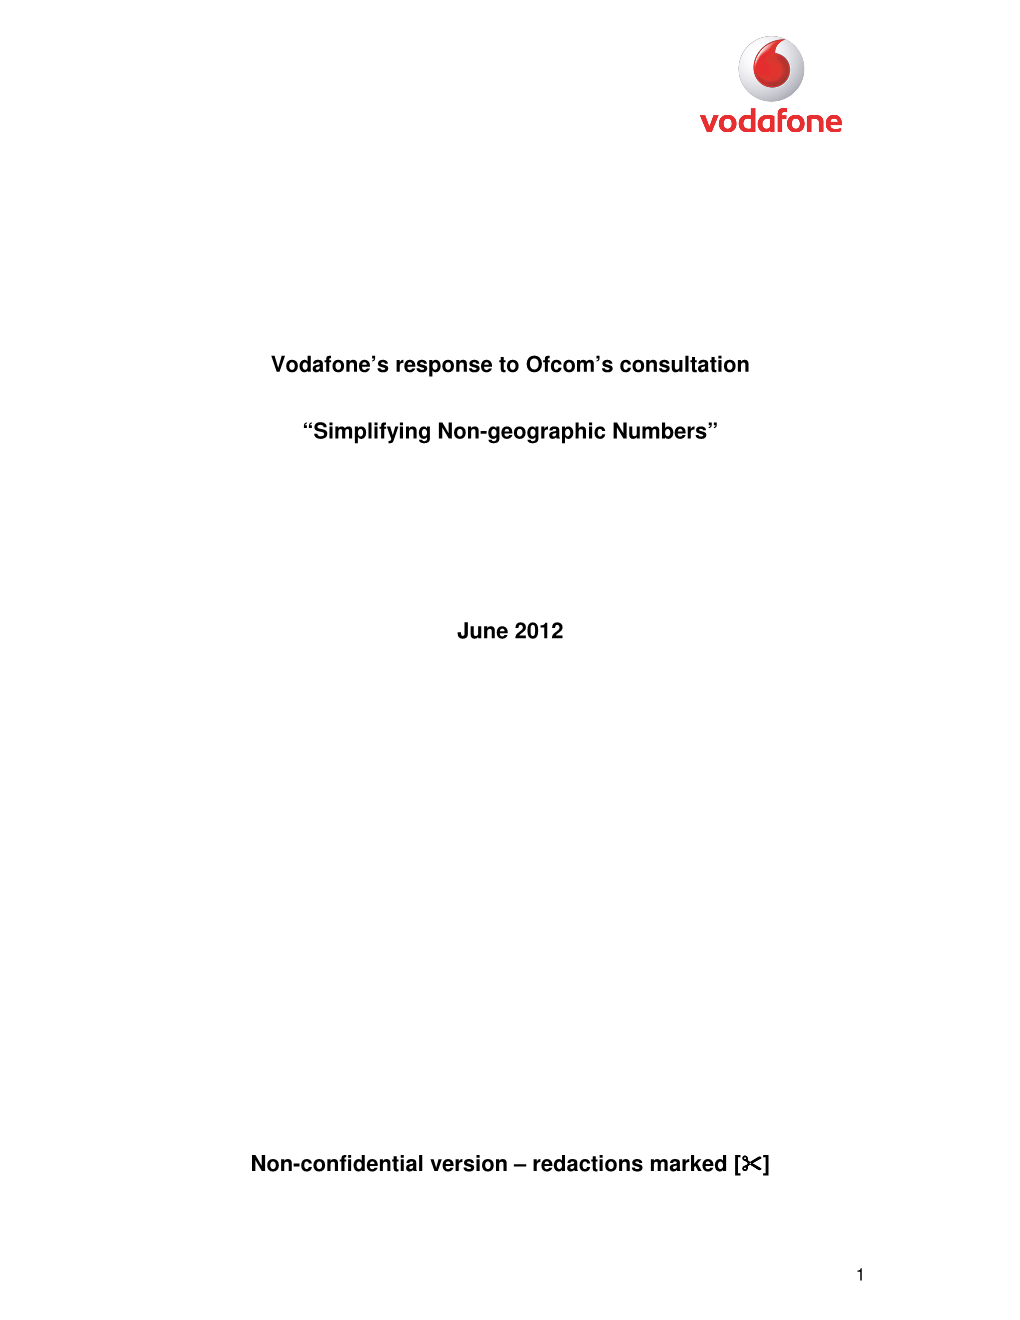 Vodafone.Pdf (PDF File, 566.1